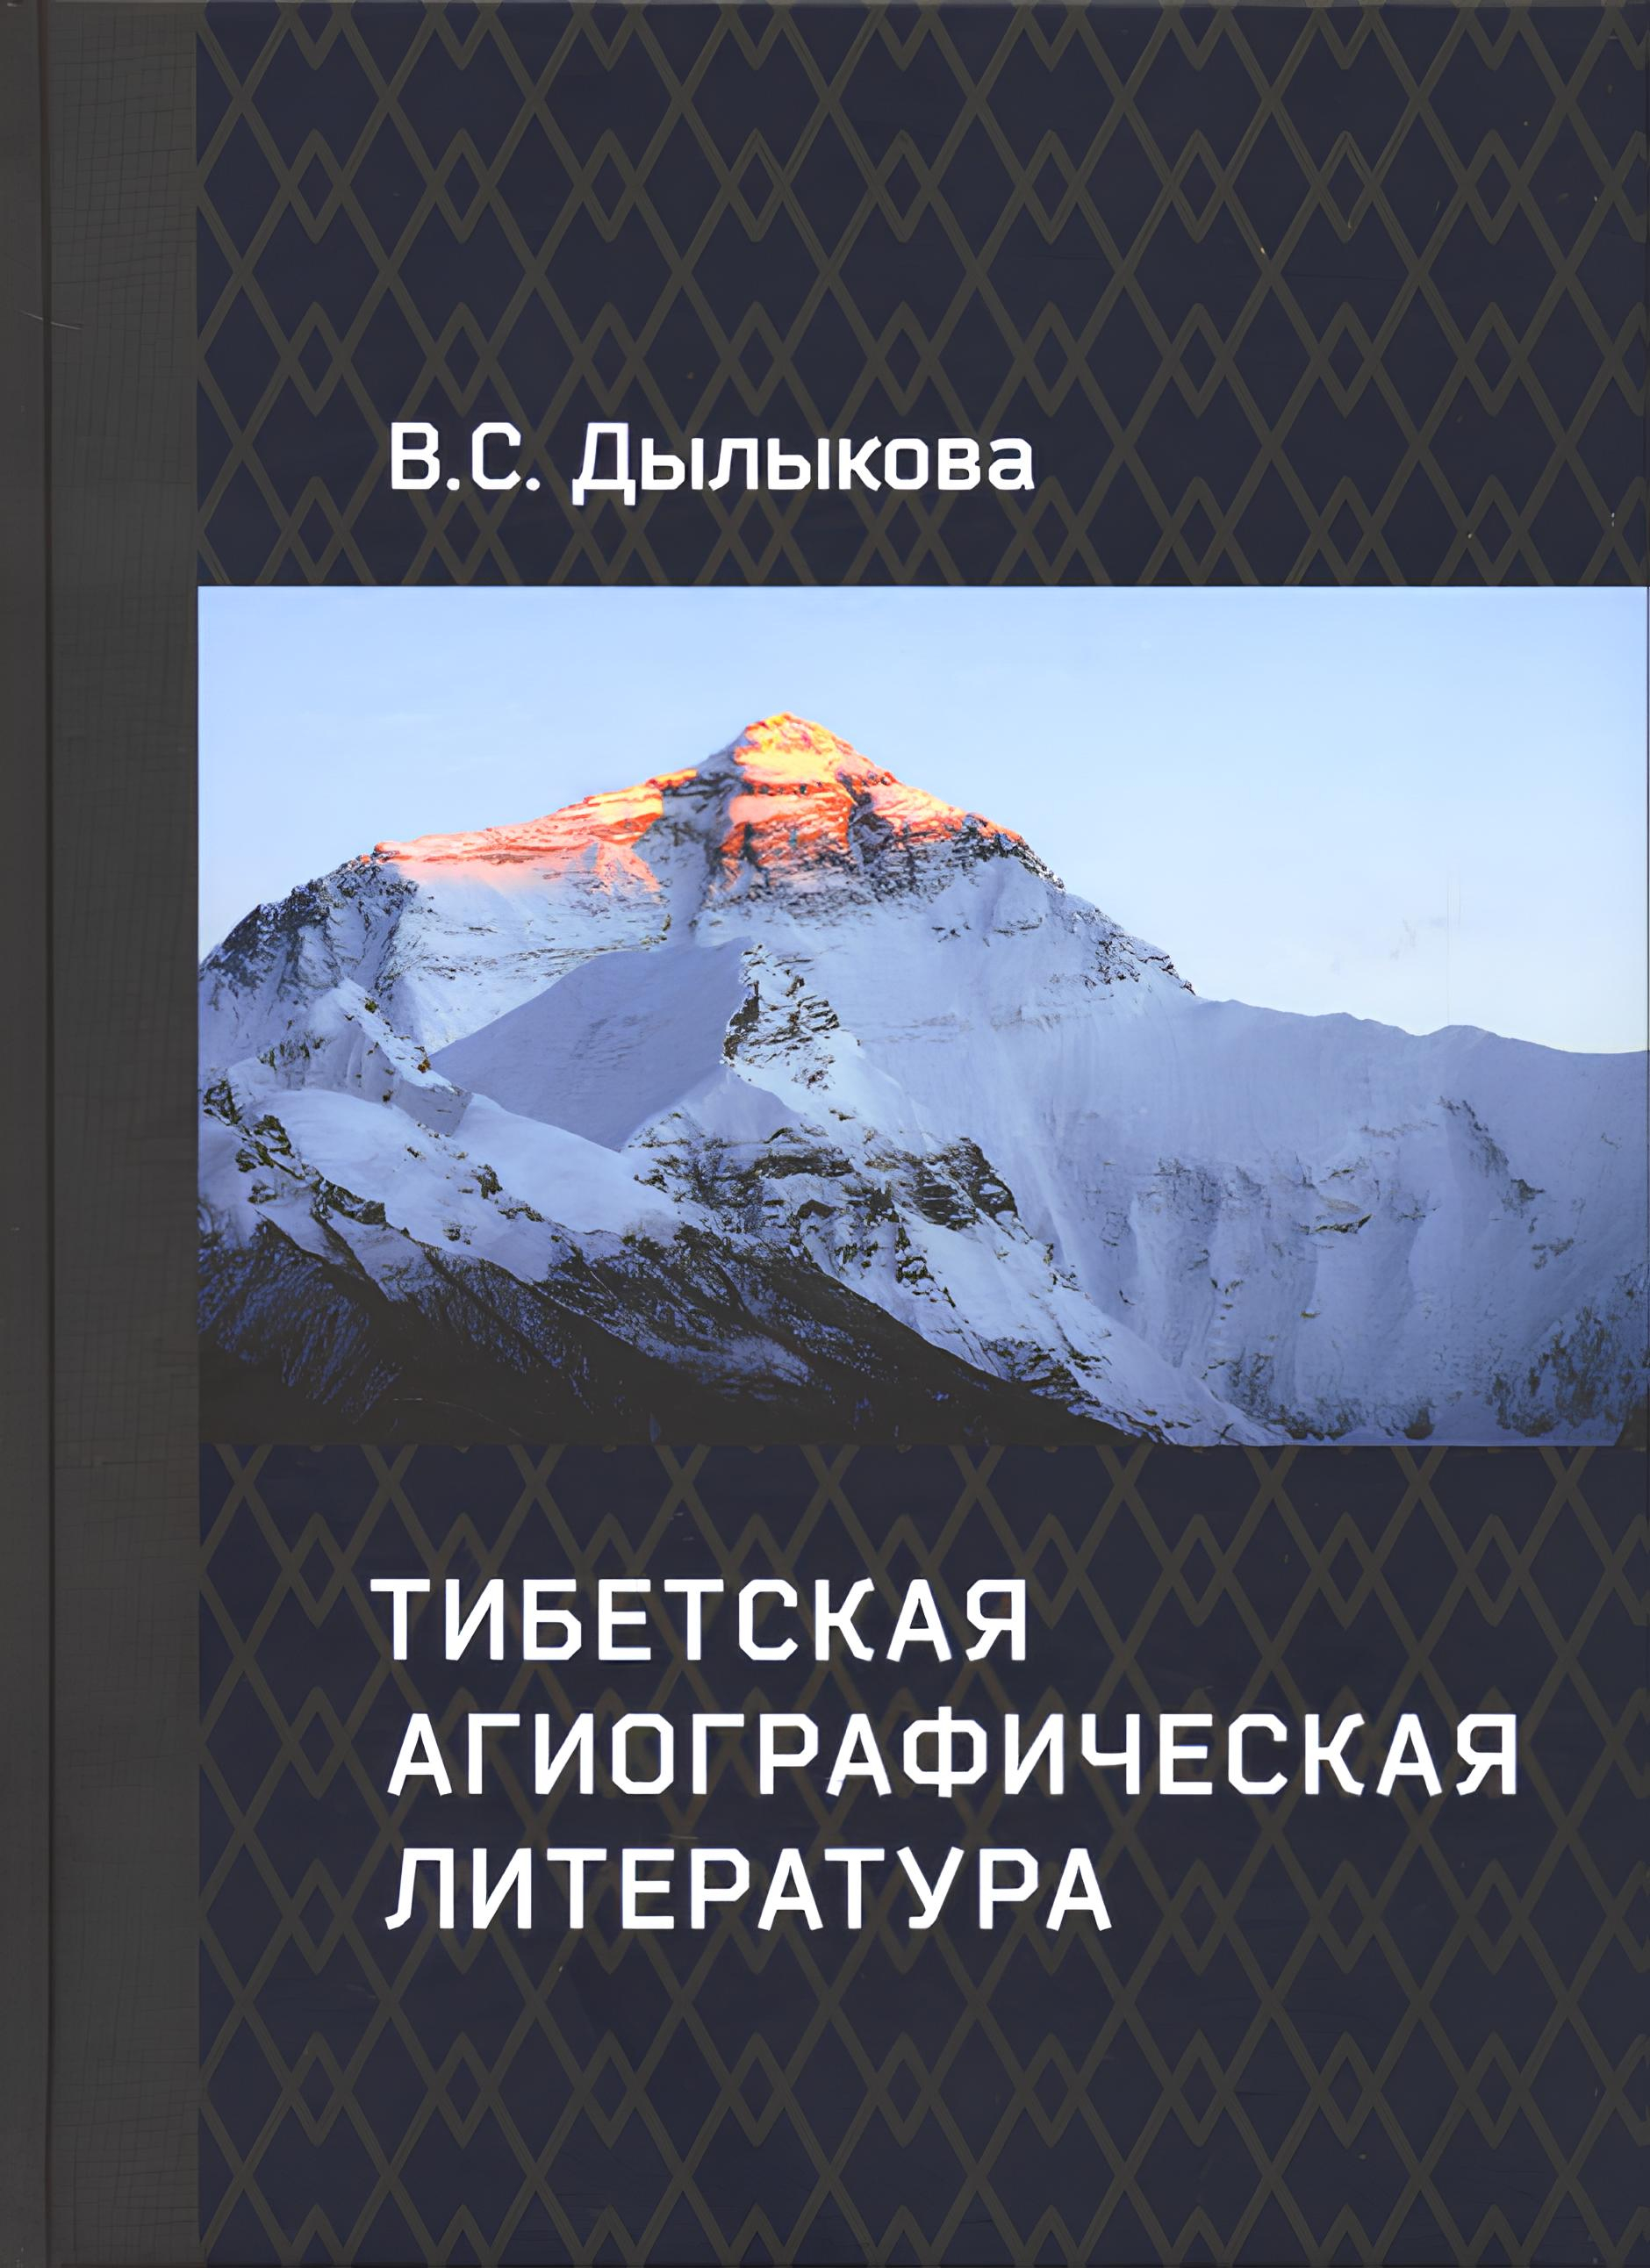 "Тибетская агиографическая литература" 